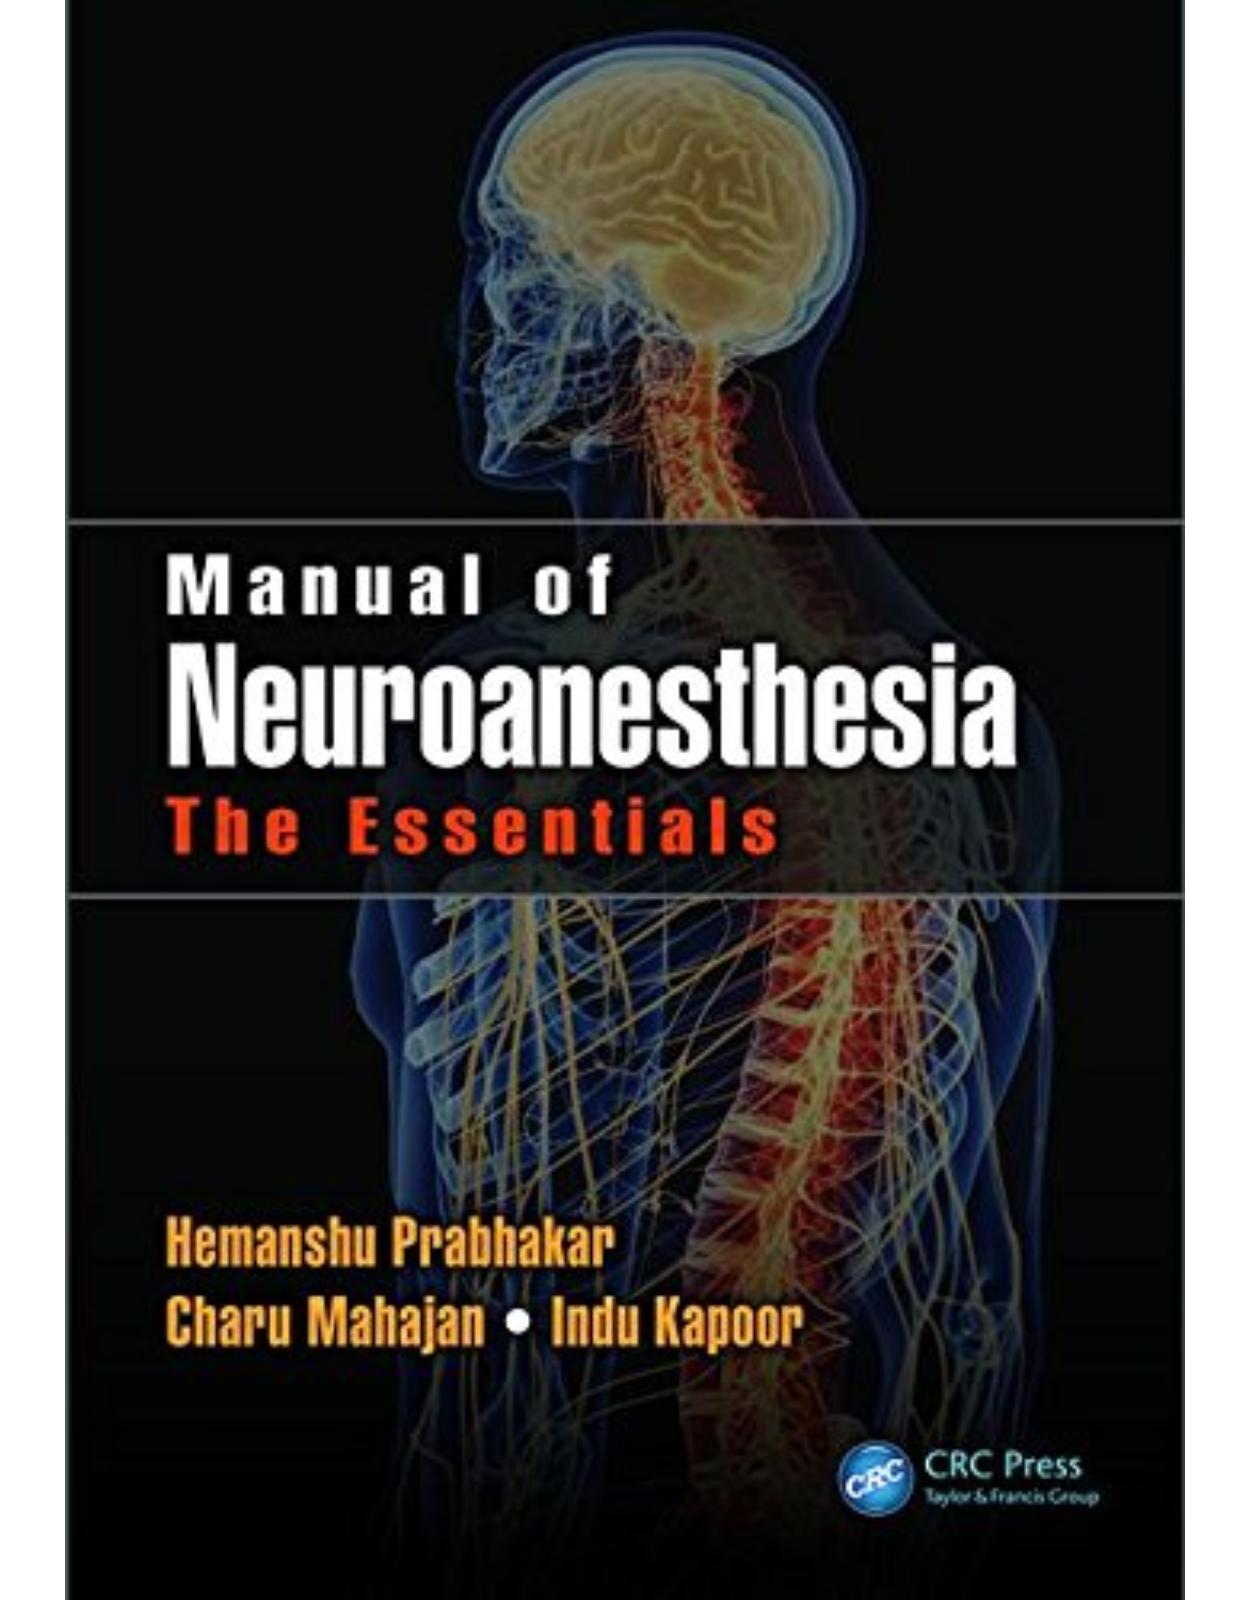 Manual of Neuroanaesthesia